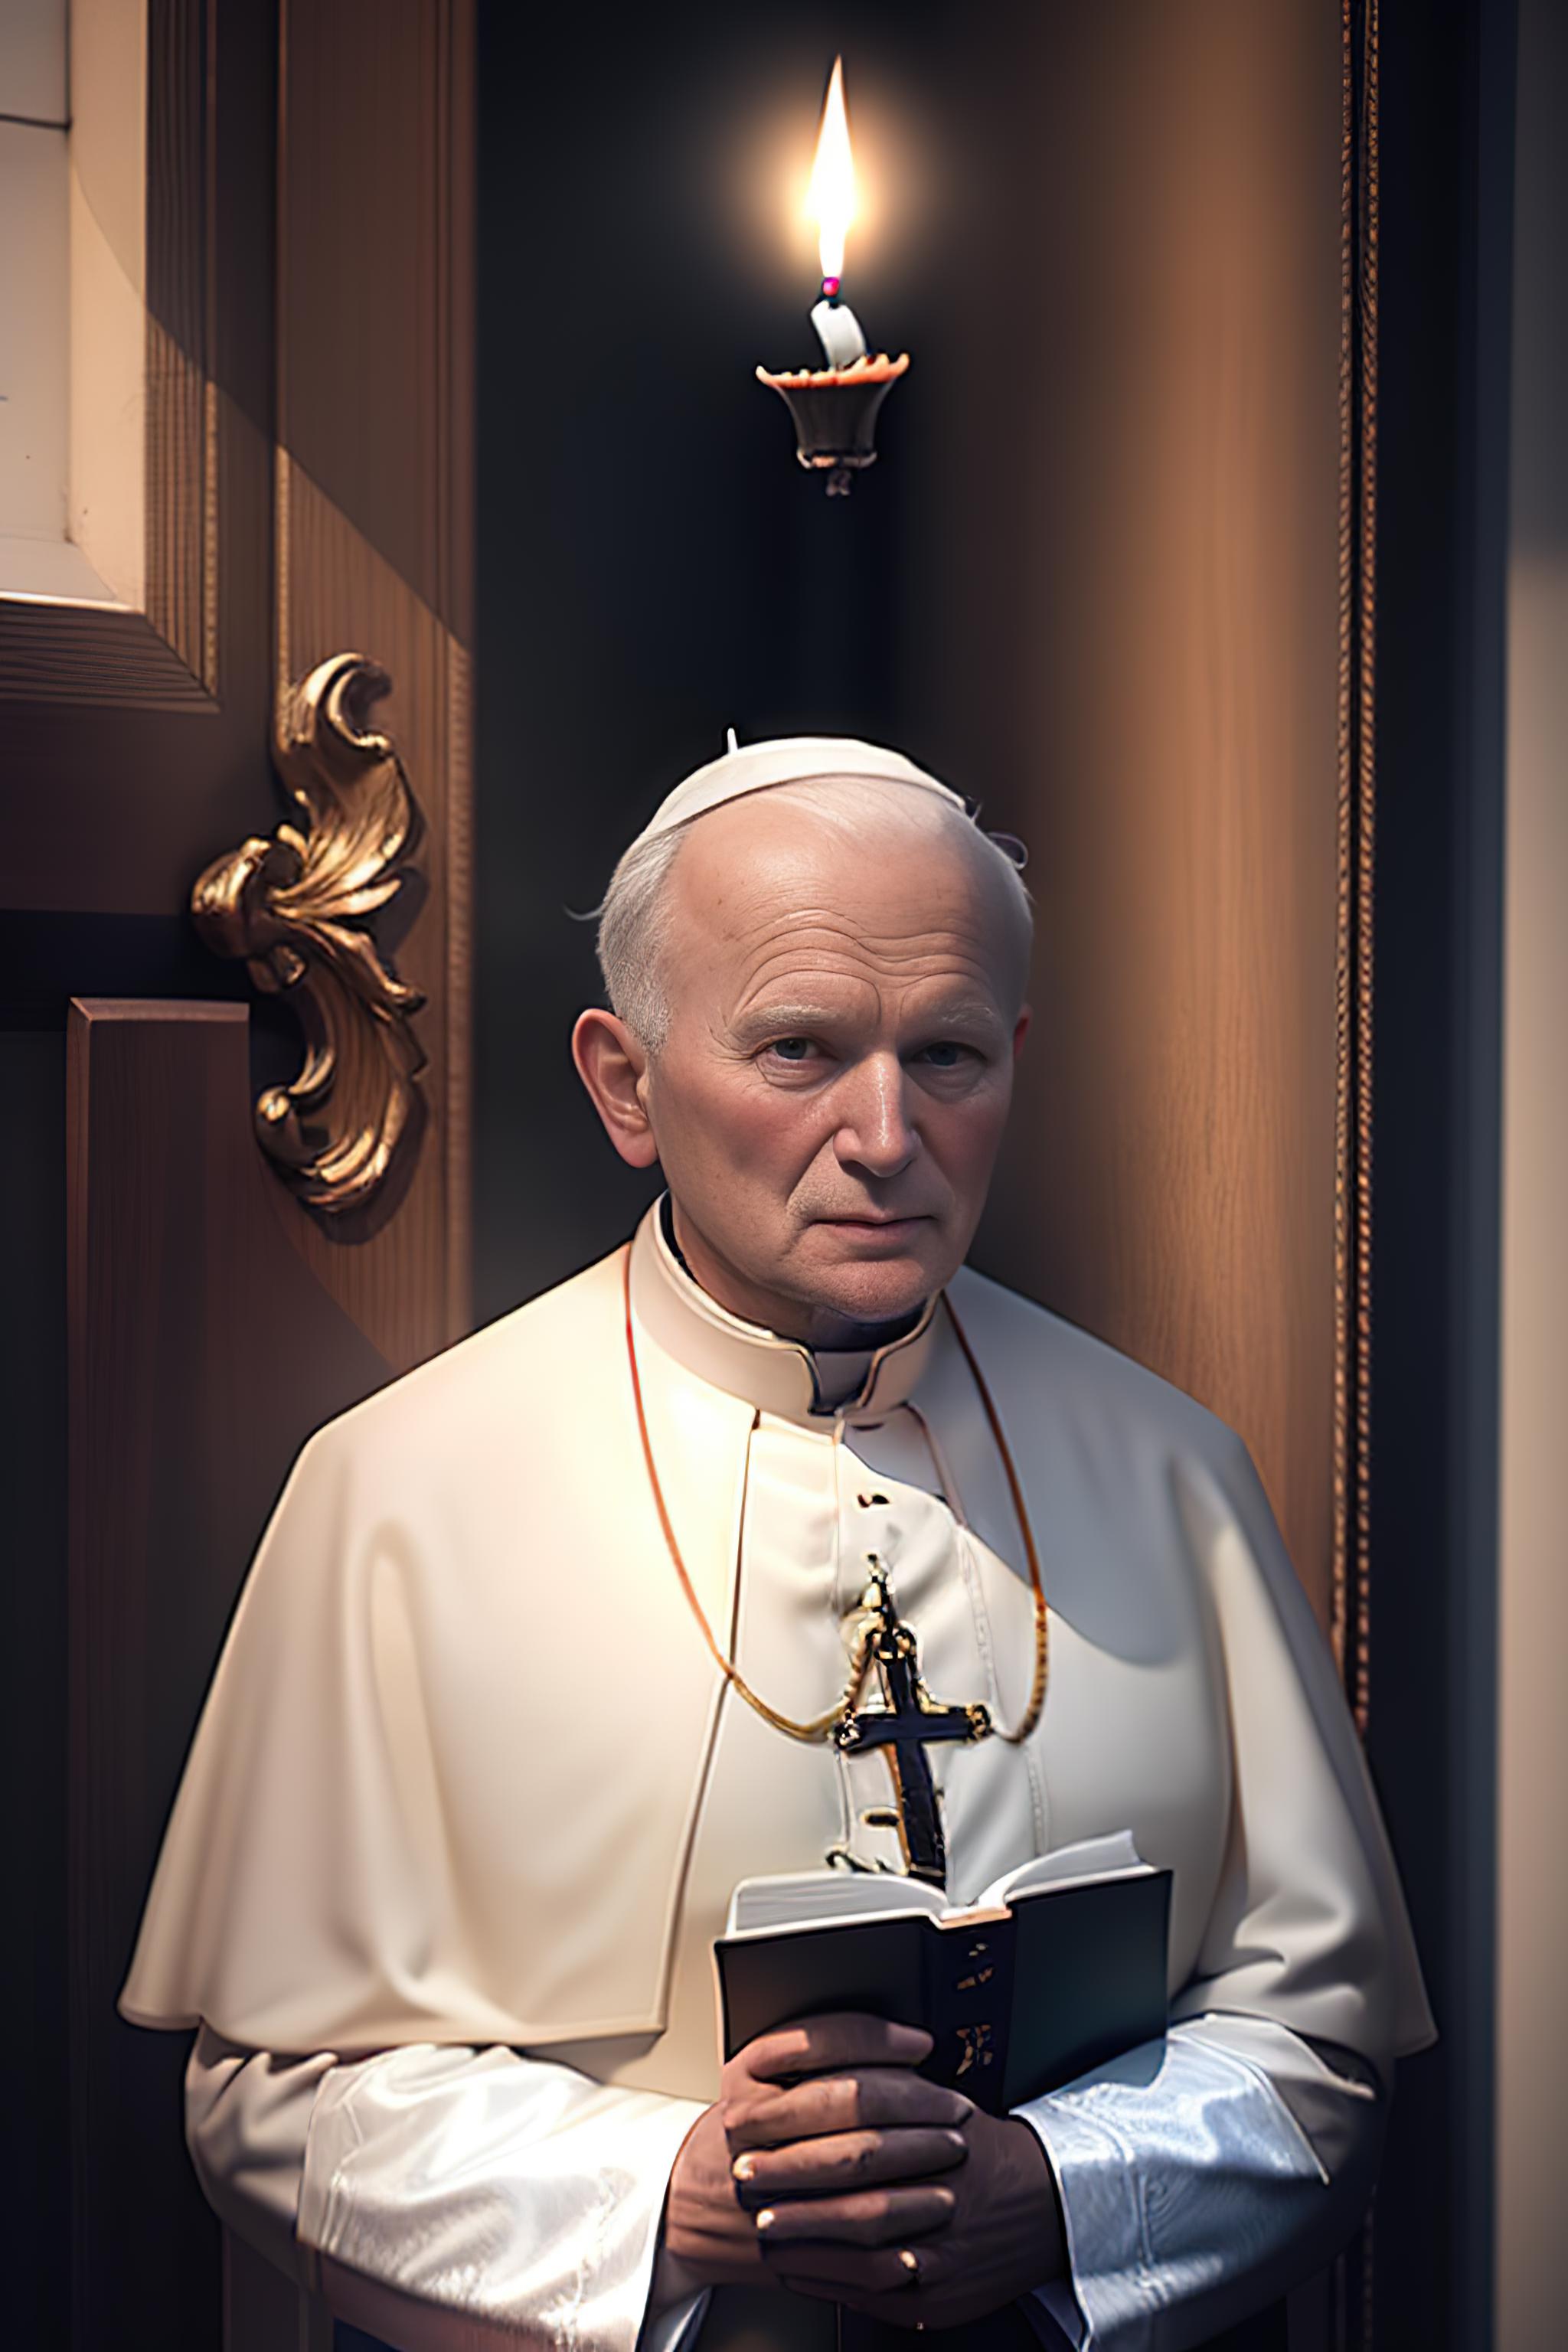 Jan Paweł II. Ex Pope John Paul II image by havv